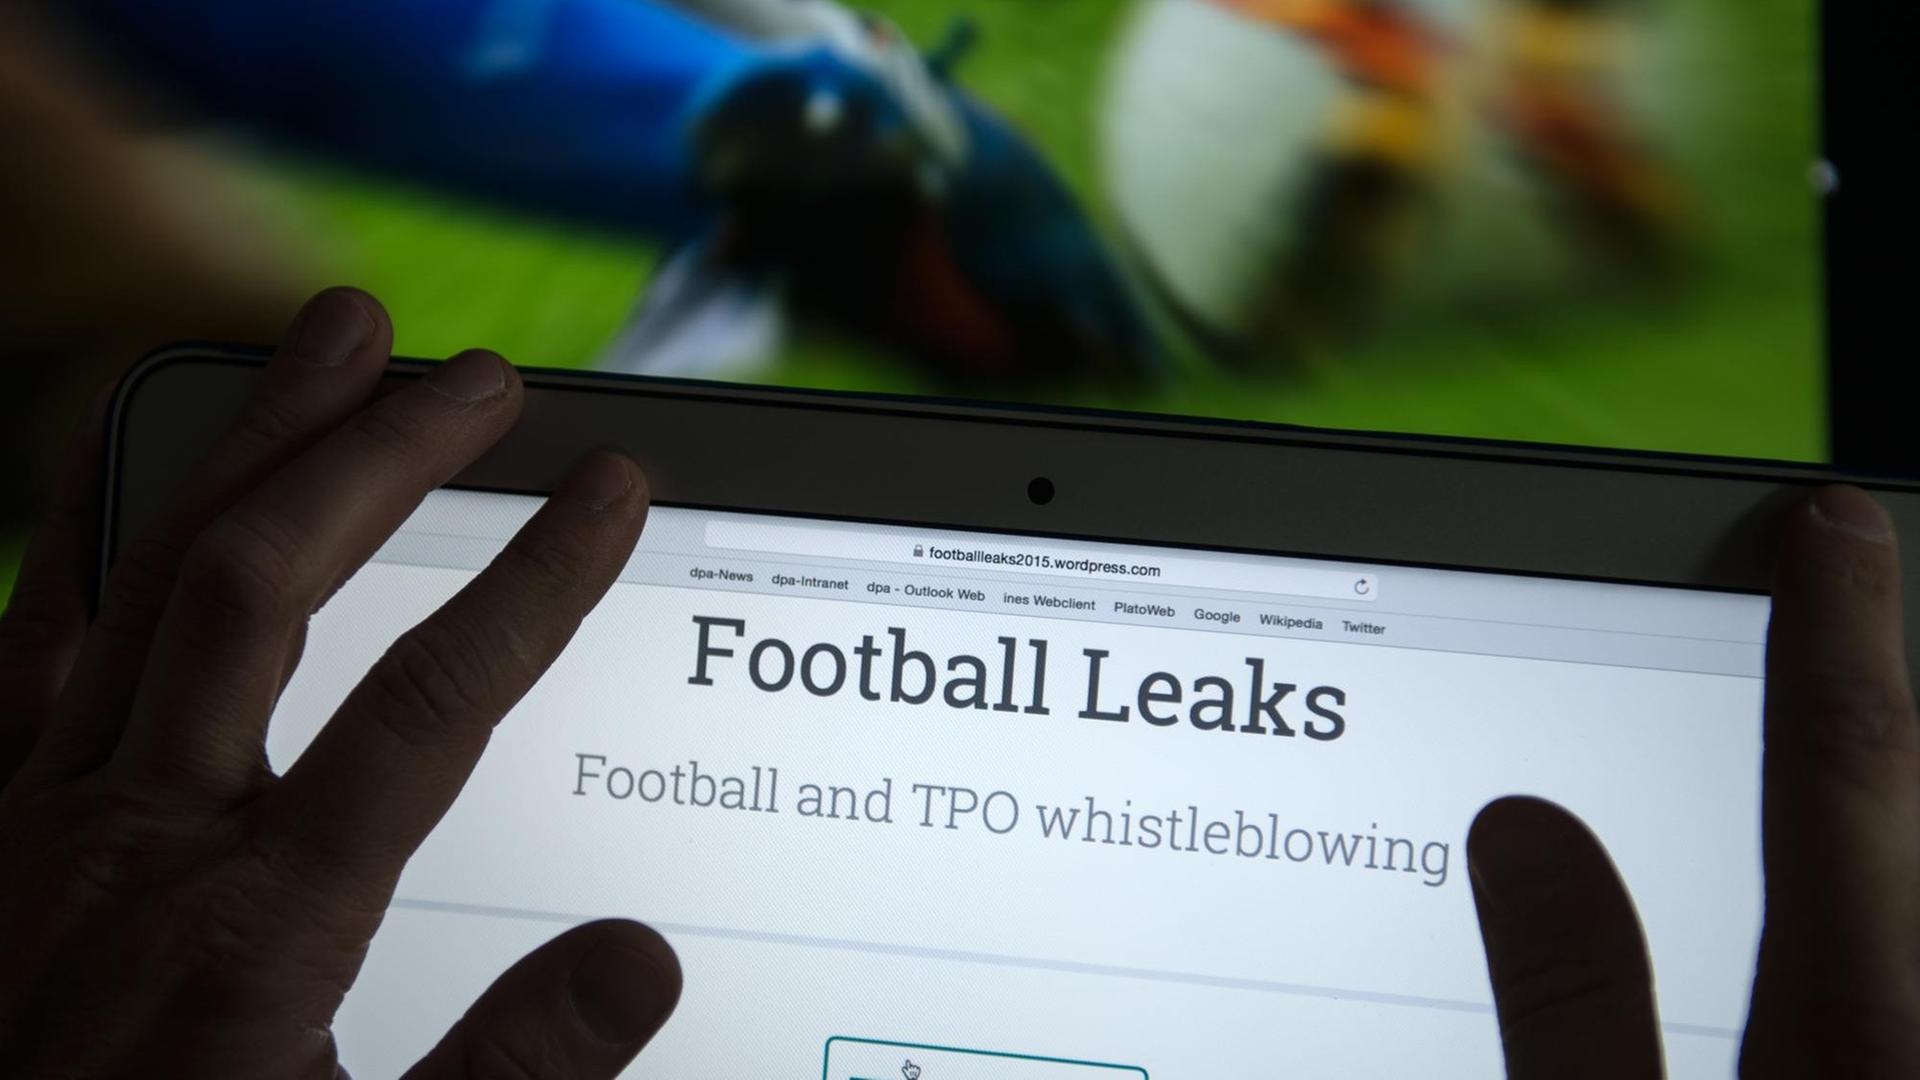 Hände zeigen auf die Internetseite "Football Leaks"